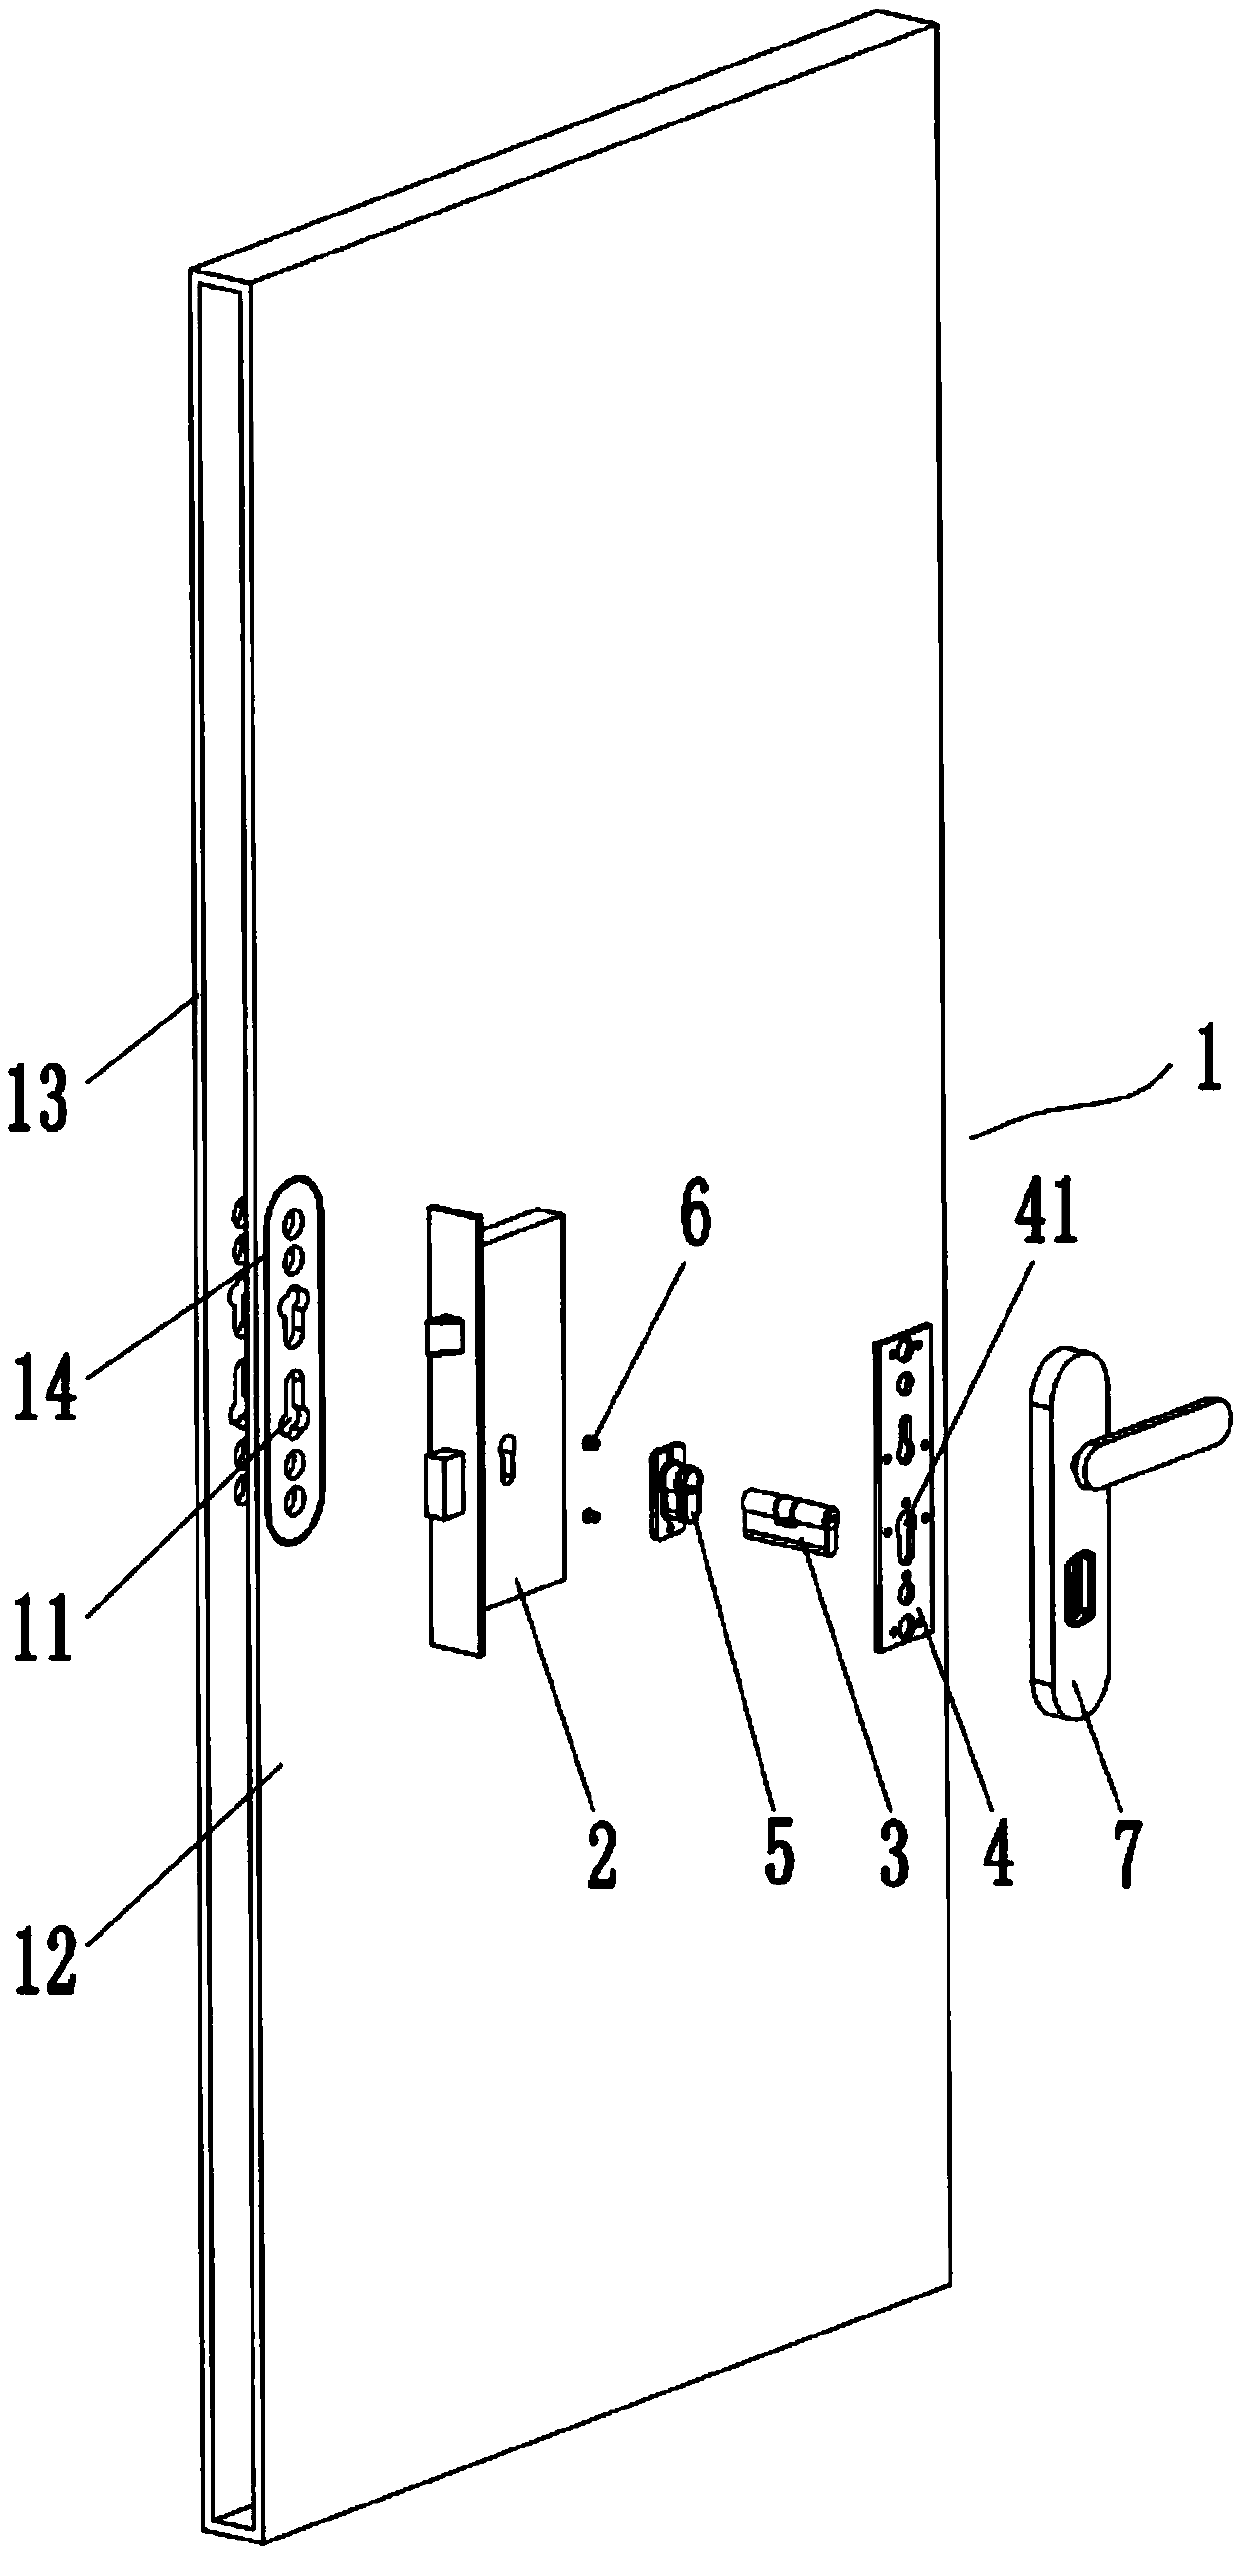 Pickproof door lock structure